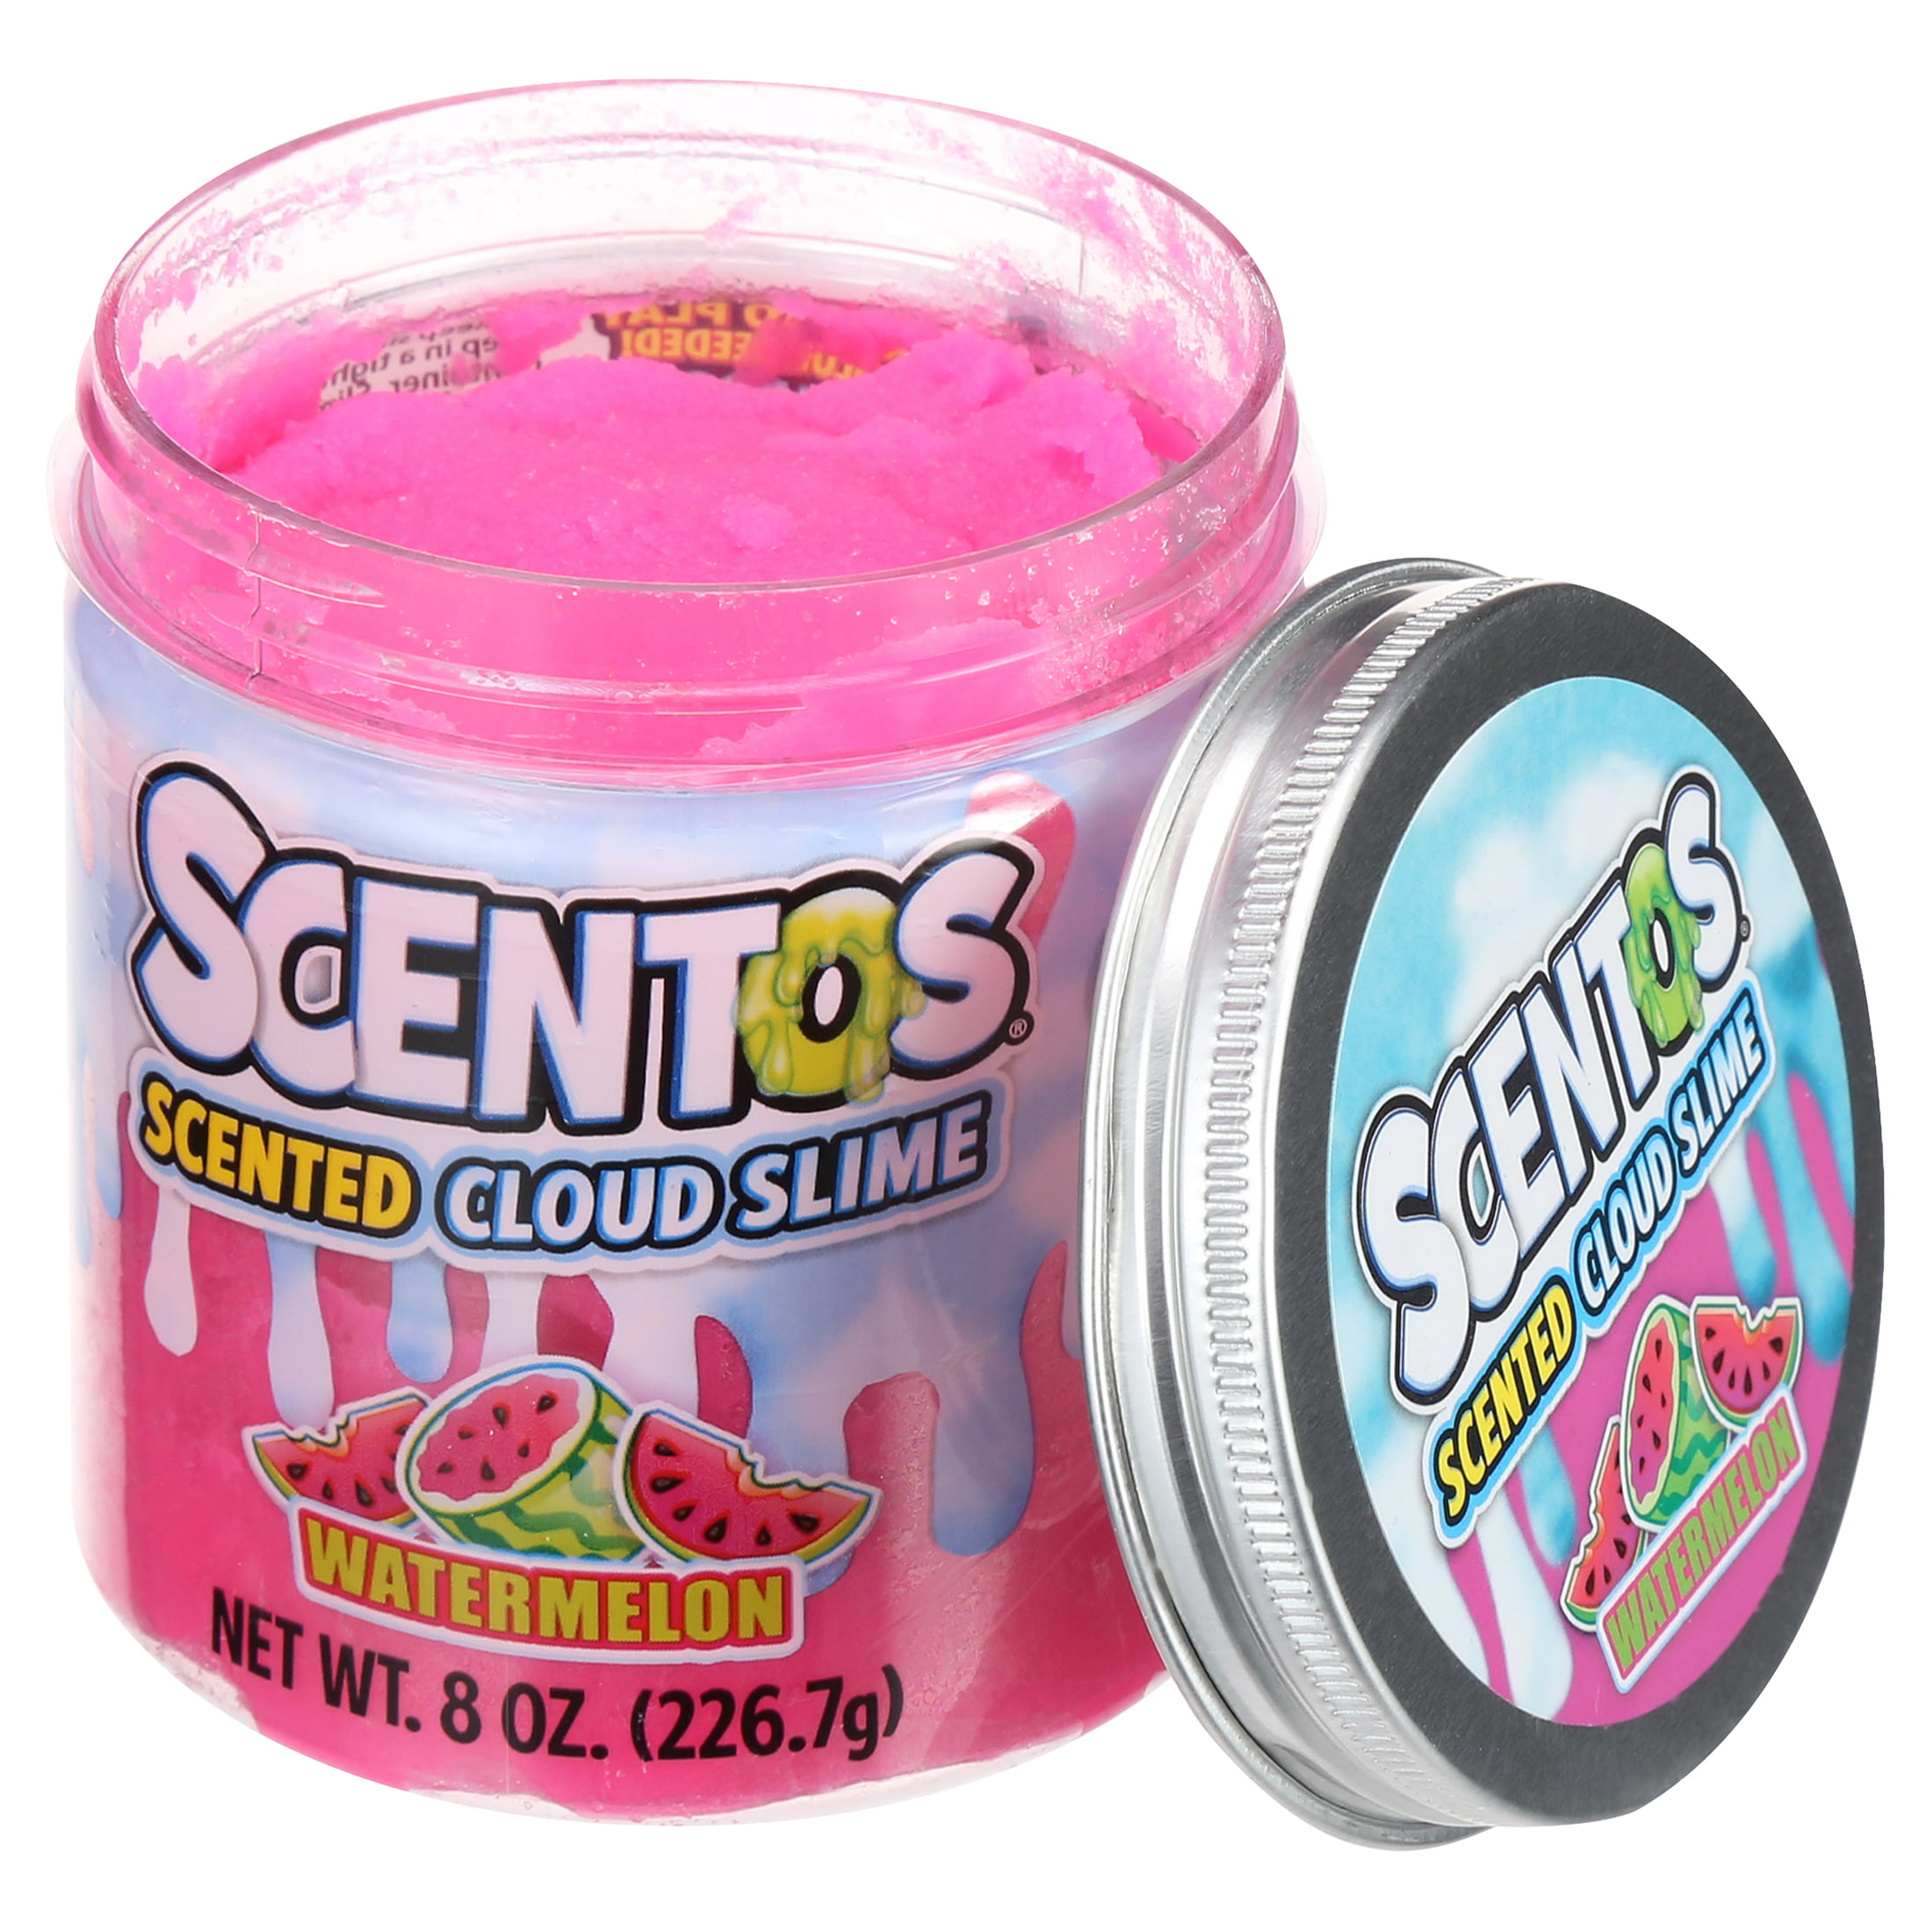 4 Scentos Scented Cloud Slimes Bubble Gum Watermelon Cotton Candy Choc Chip  8oz